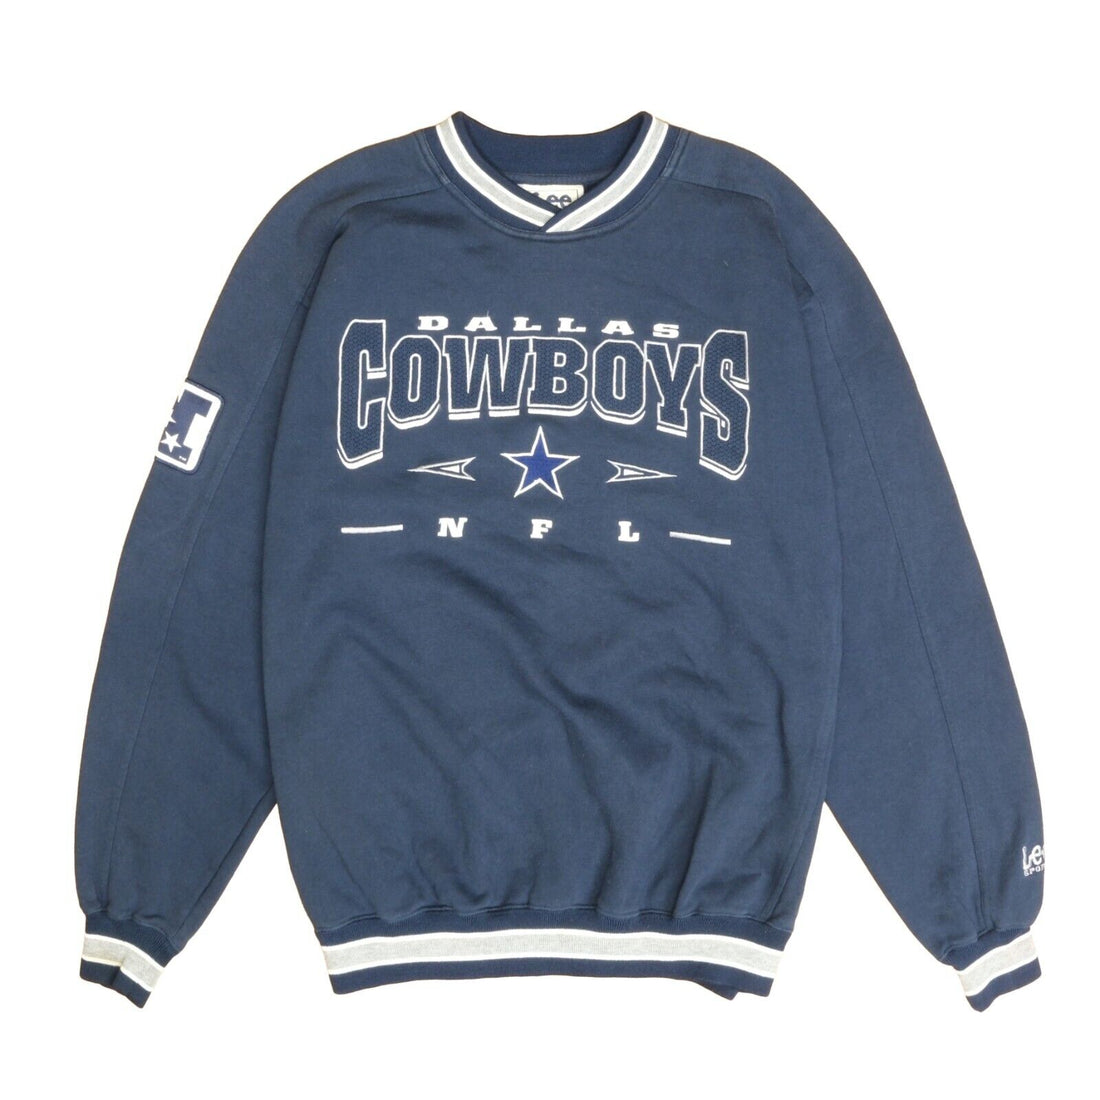 Vintage Dallas Cowboys Sweatshirt Size Large Blue 90s NFL